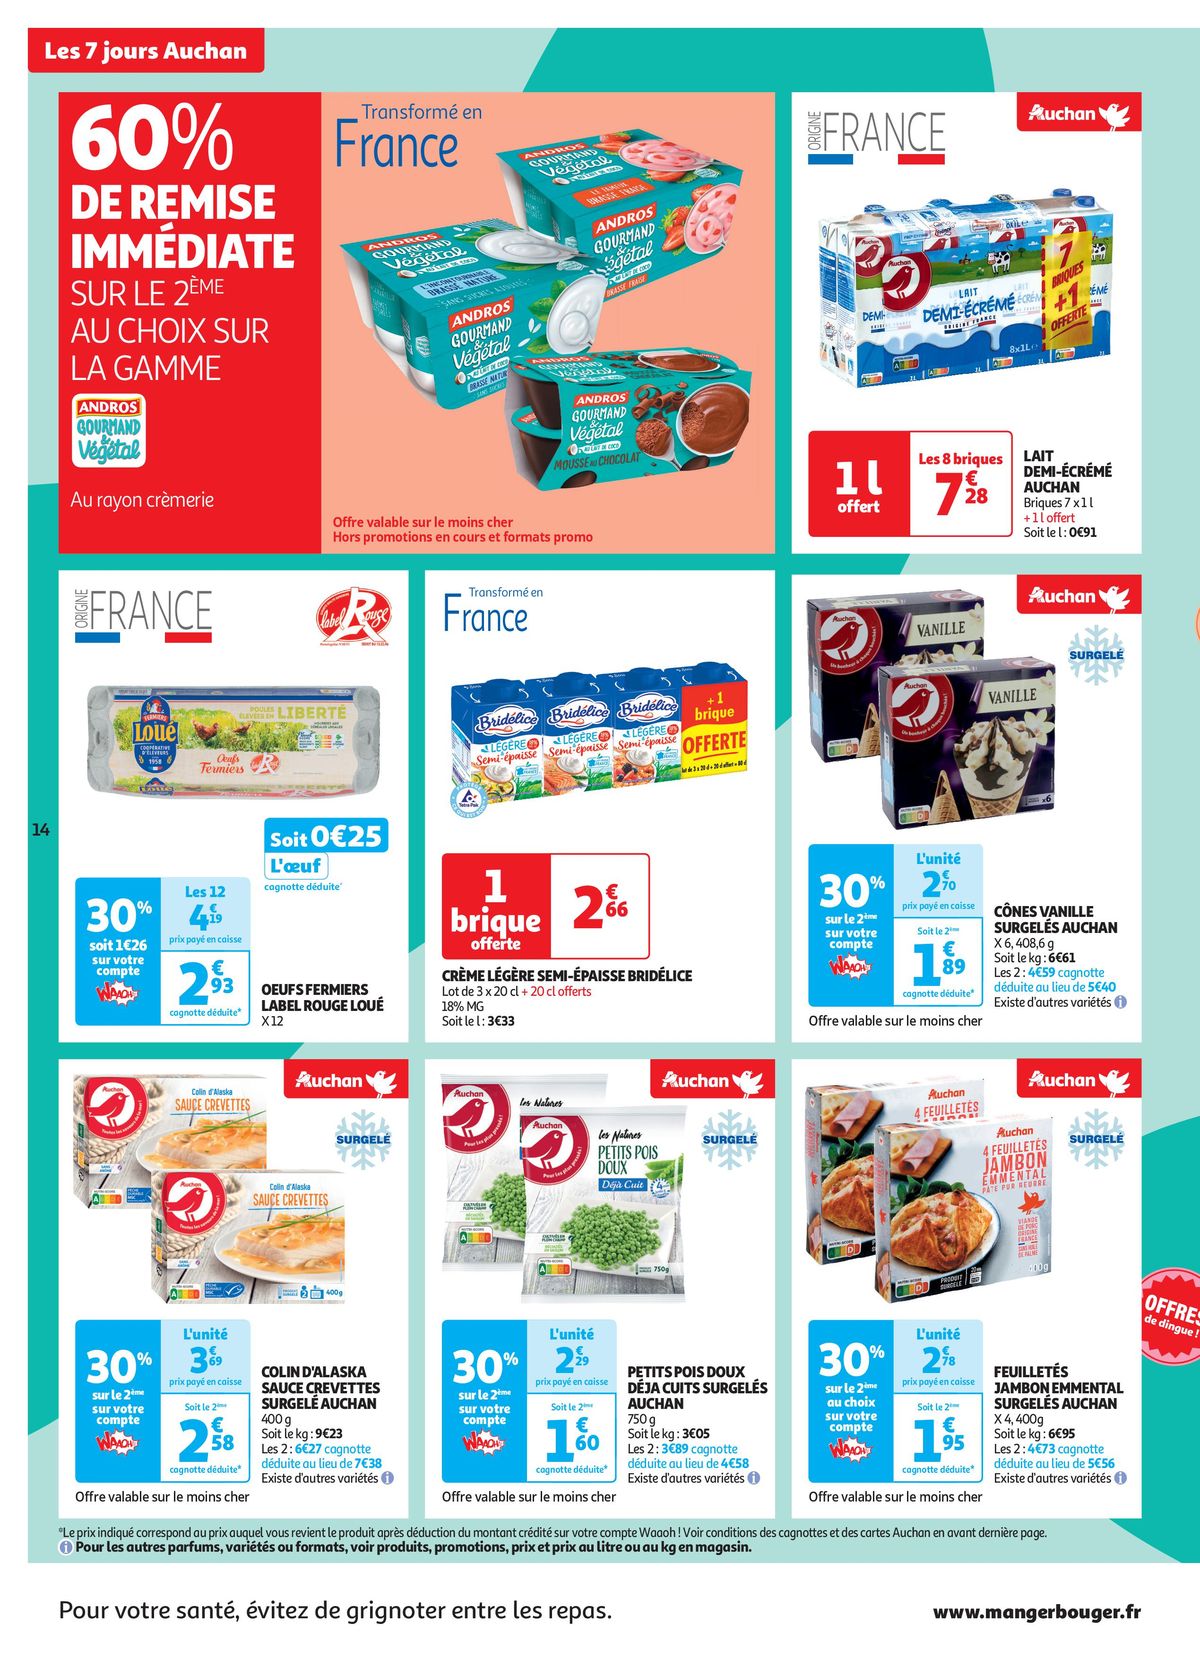 Catalogue C'est les 7 jours Auchan dans votre super !, page 00014